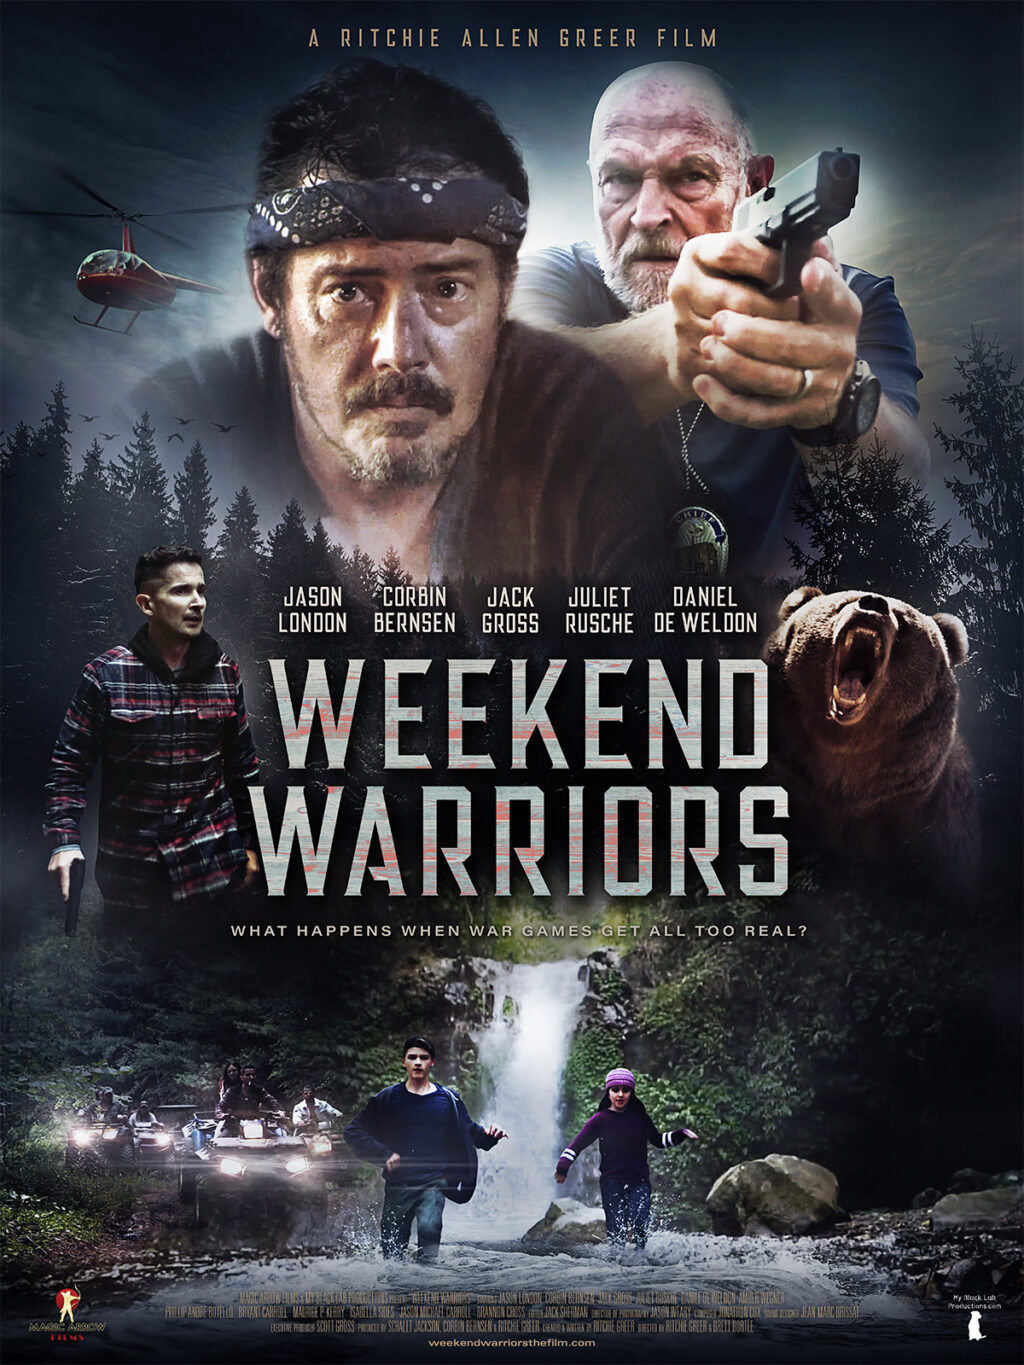 MV5BMGI4ZjBjNWYtYmI2OS00MjgxLTk0ZTctYzY1YWNkMWI2ODE0XkEyXkFqcGdeQXVyMTY3NTQ3MjE@. V1  1024x1365 - 'Weekend Warriors' Review: Thrill Seekers Will Eat This Film Up